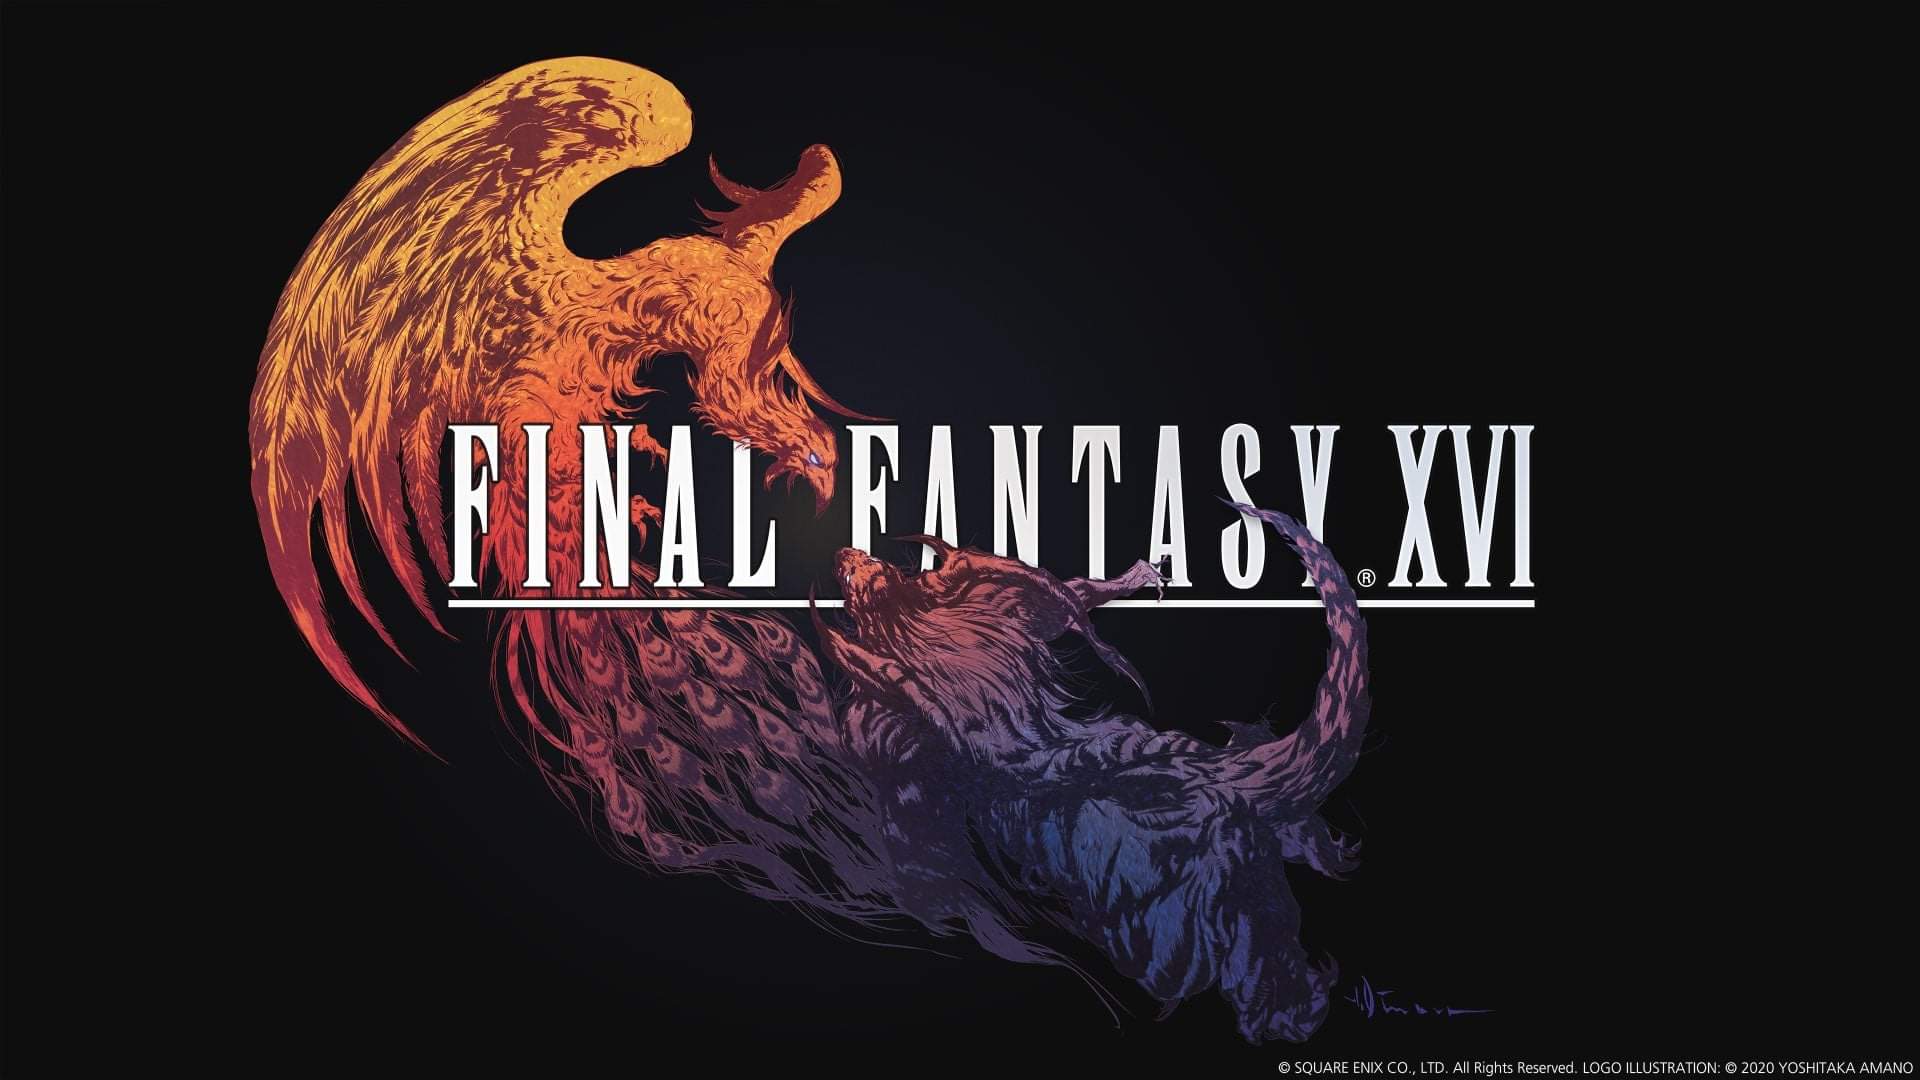 Final Fantasy producent hintar om att datum för släpp kommer snart